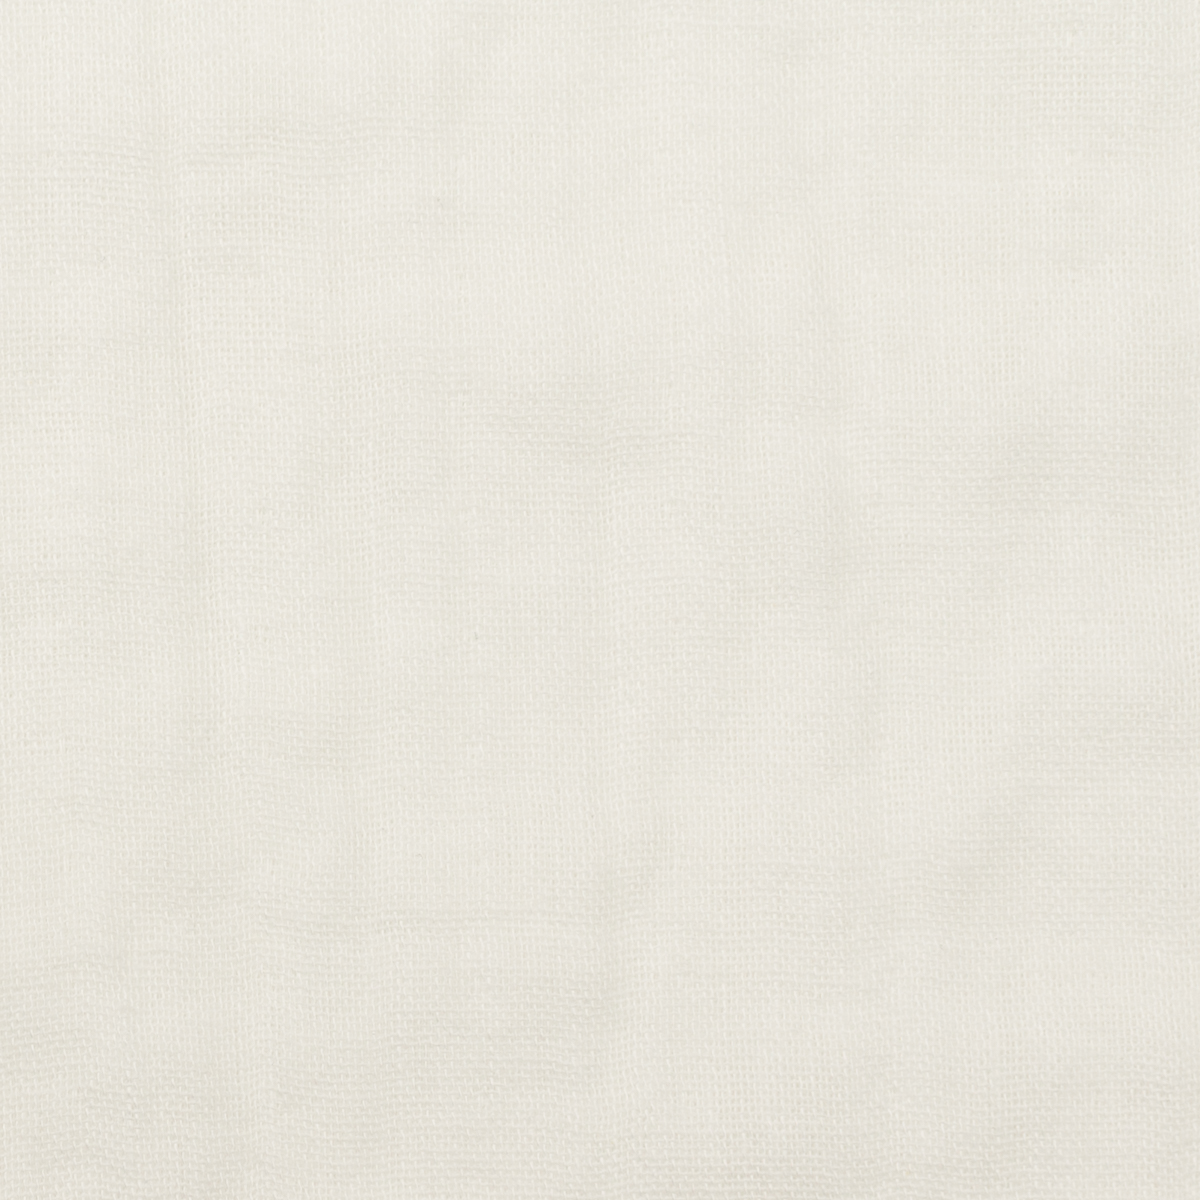 コットン×無地(ホワイト)×Wガーゼワッシャー_全23色のサムネイル